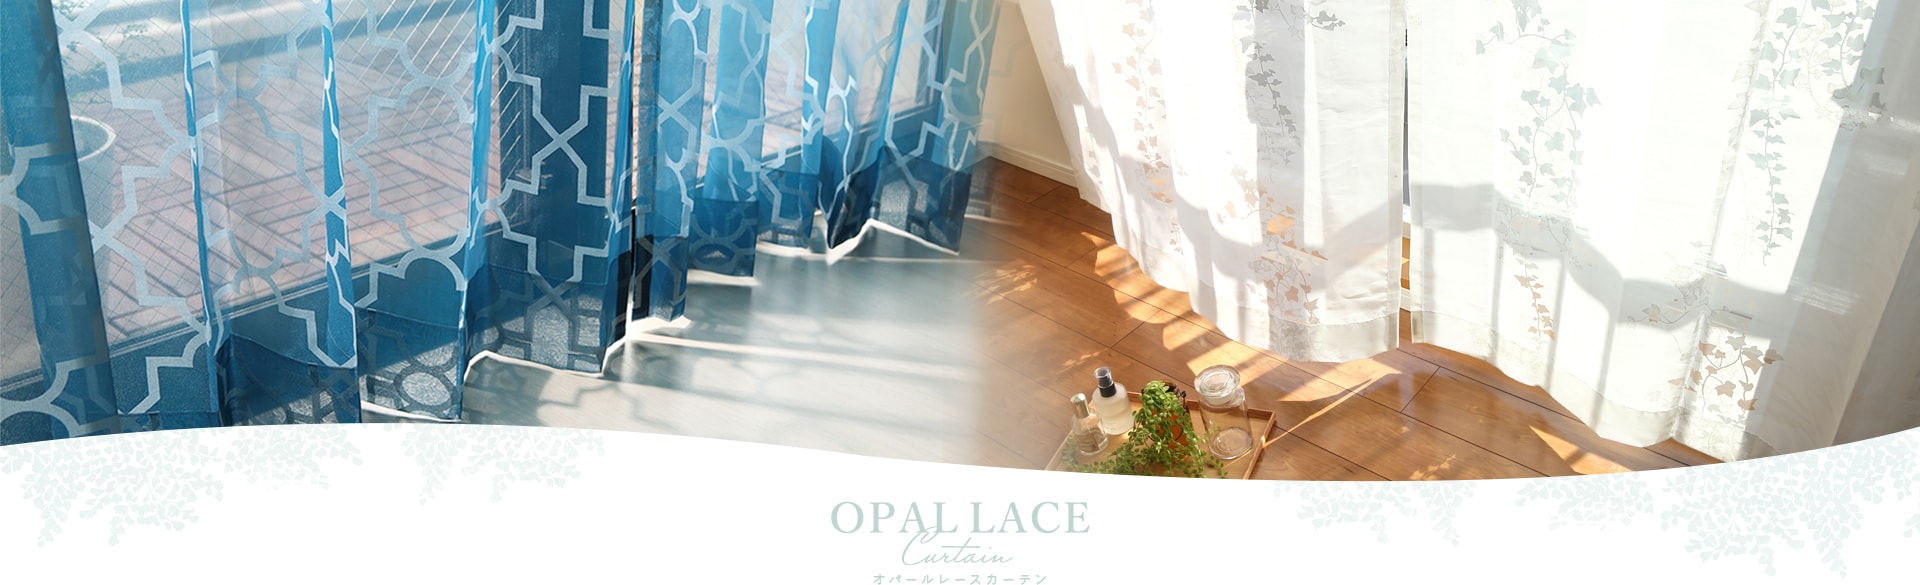 オパールレースカーテン オシャレで種類豊富なオパールプリント パーフェクトスペースカーテン館